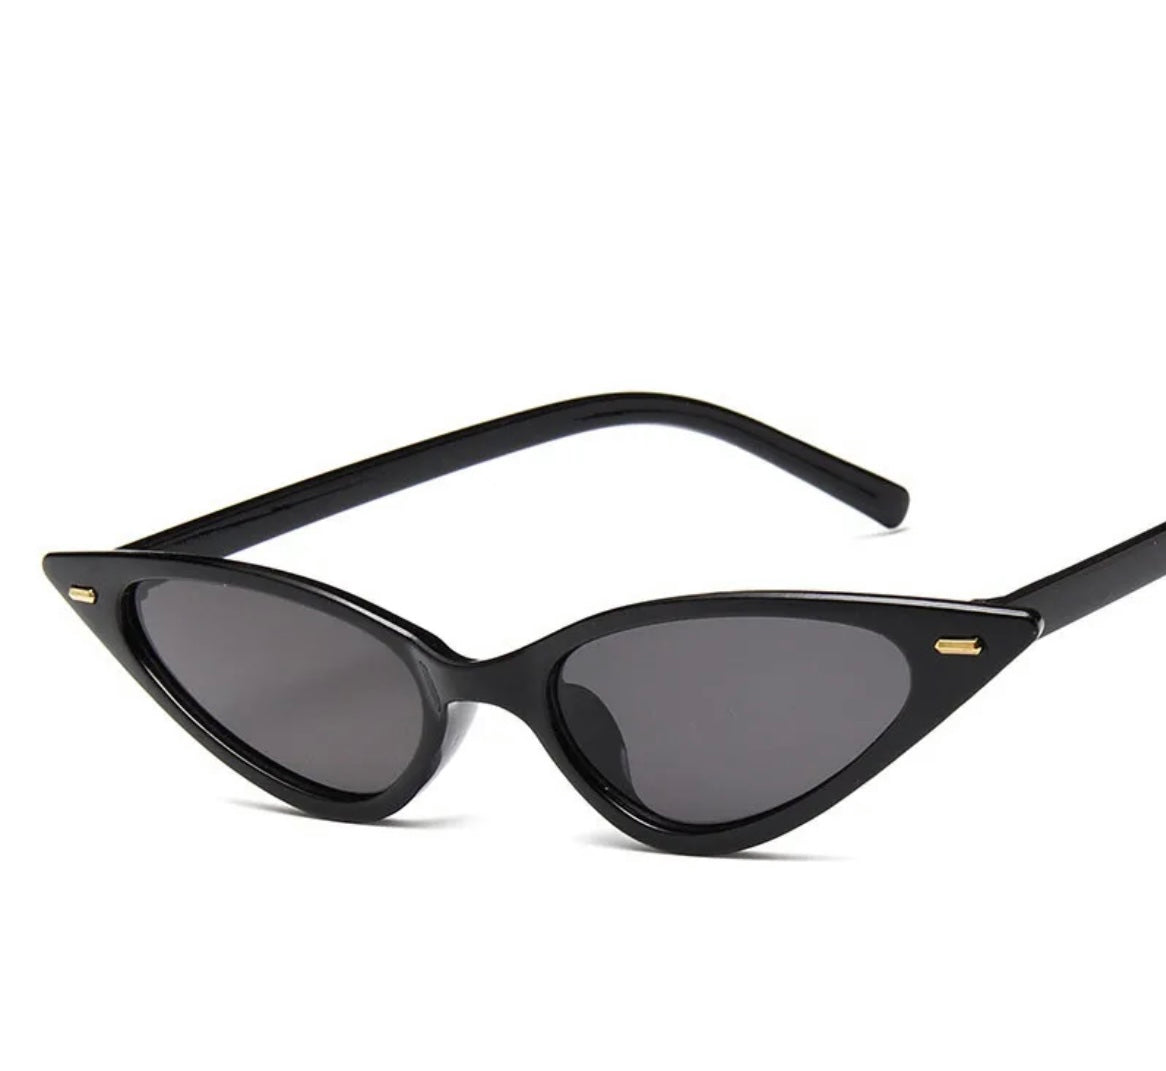 Skinny Cat Eye Sunglasses in Black